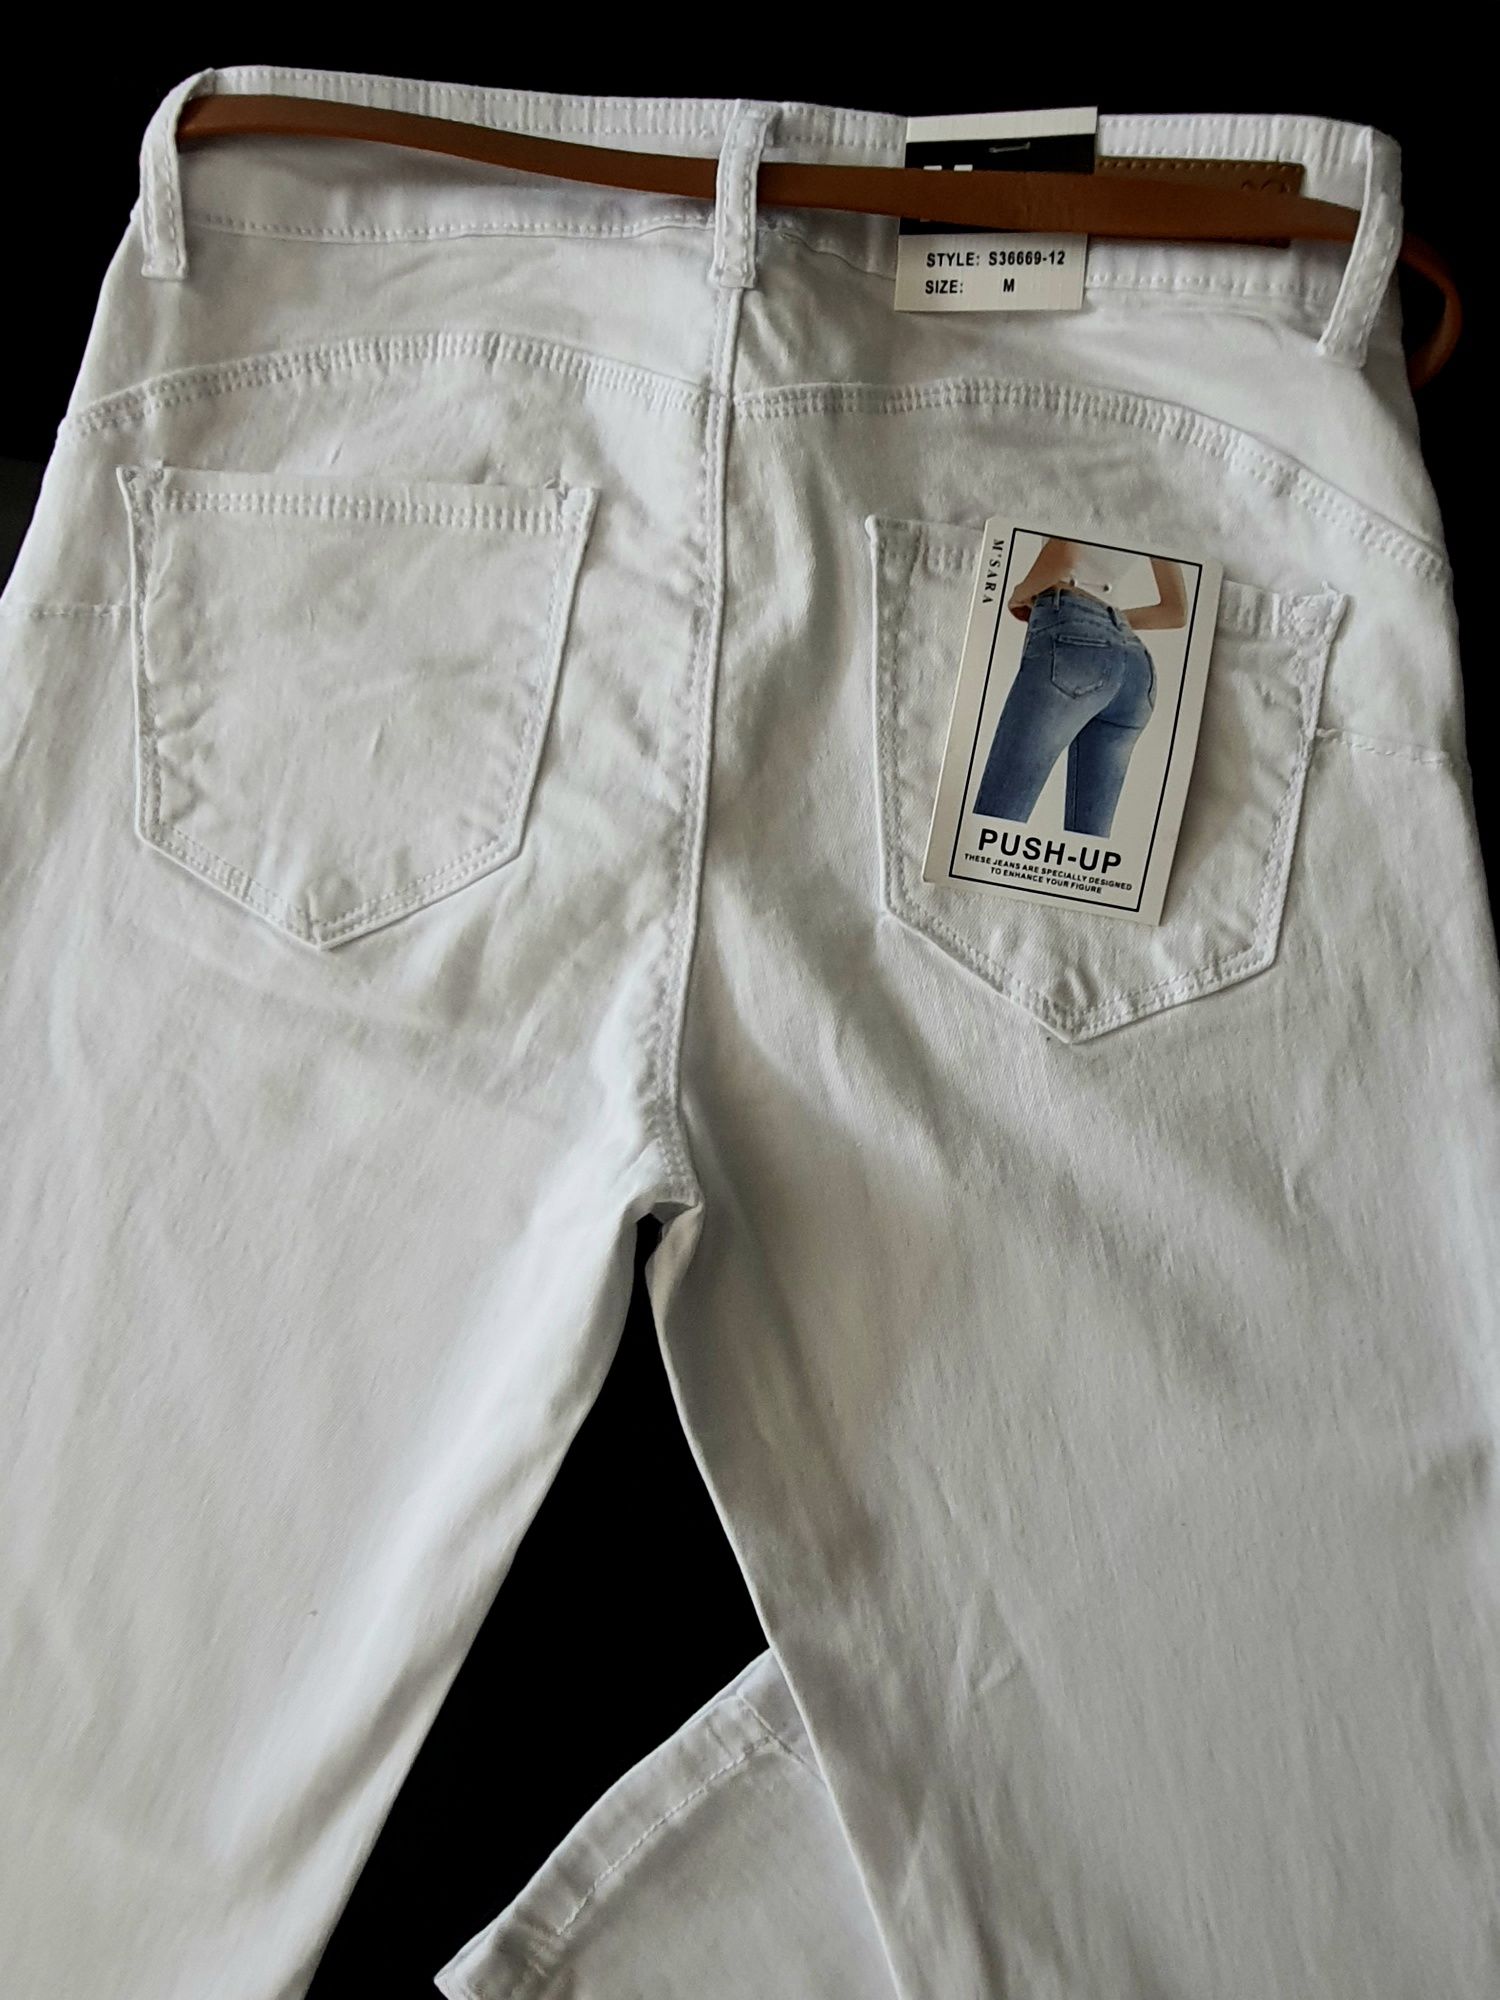 Spodnie białe wysoki stan z paseczkiem